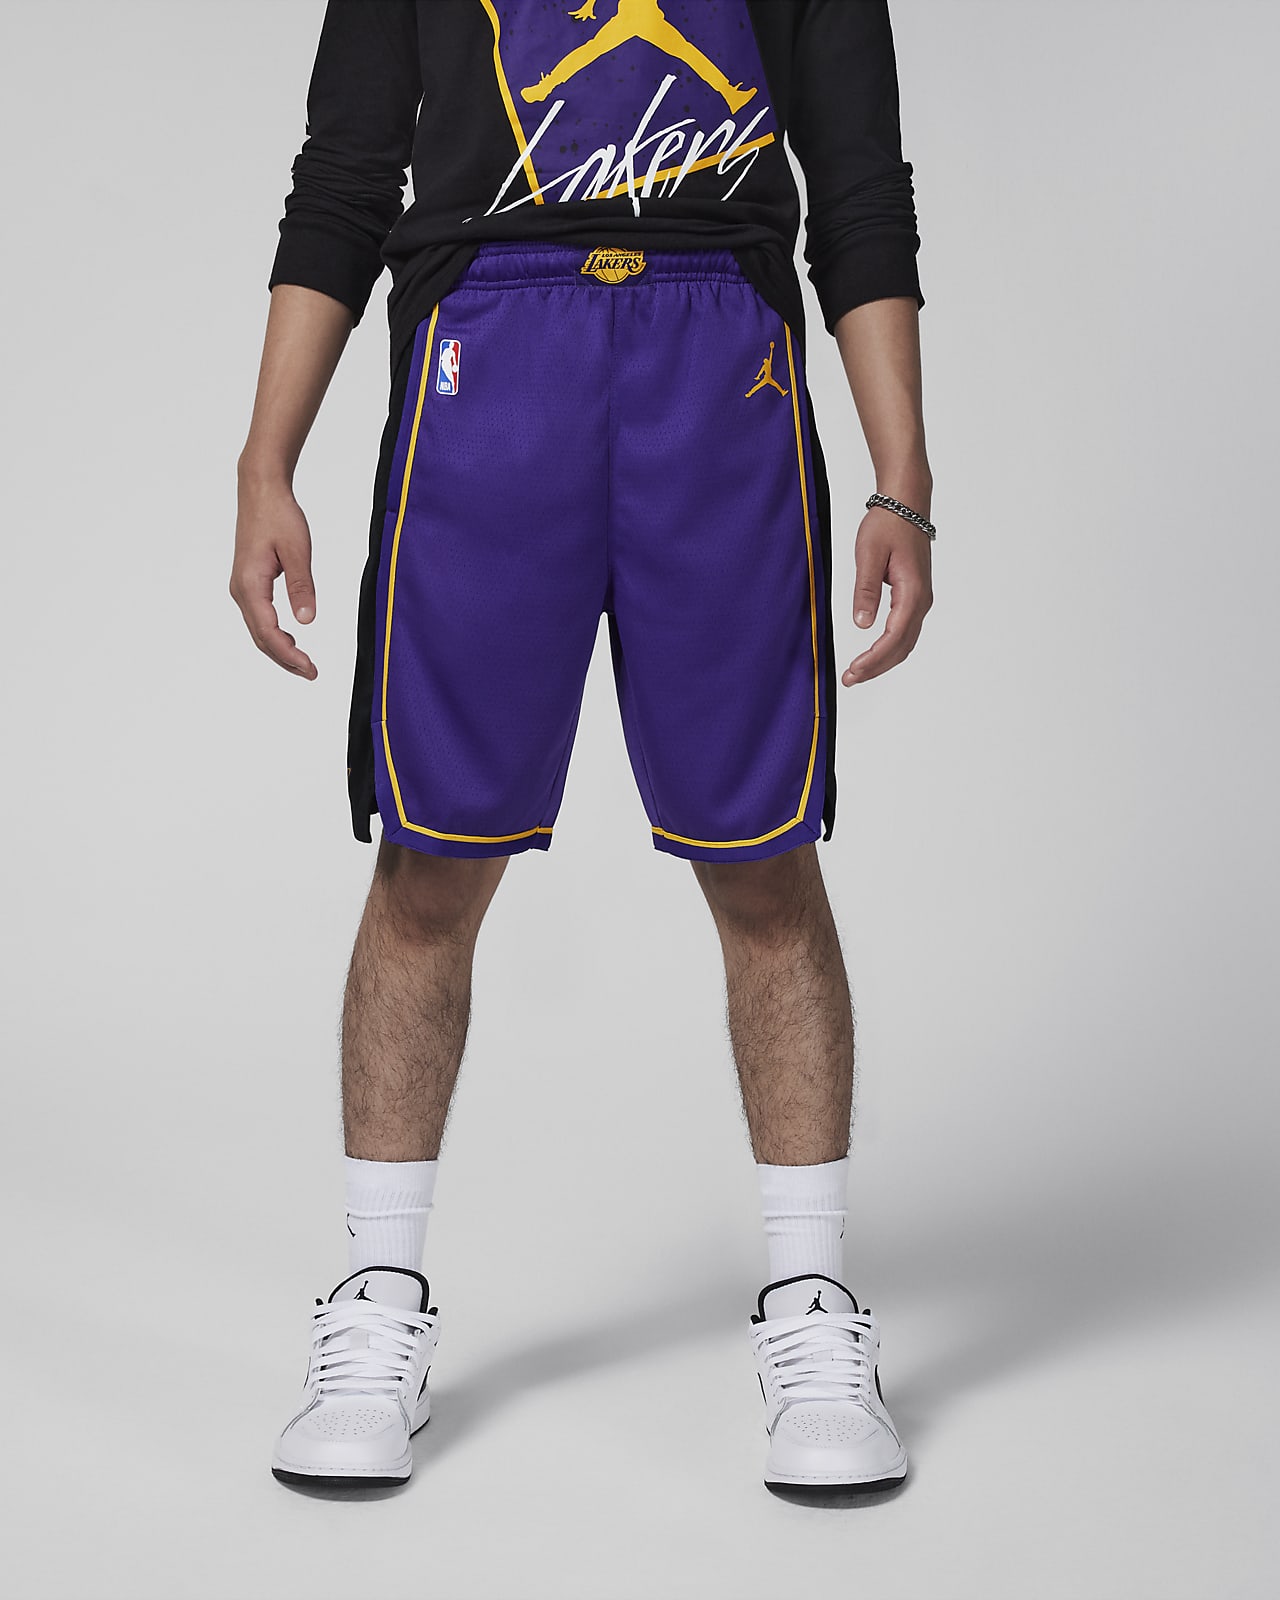 Los Angeles Lakers Statement Edition Jordan NBA Swingman kosárlabdás rövidnadrág nagyobb gyerekeknek